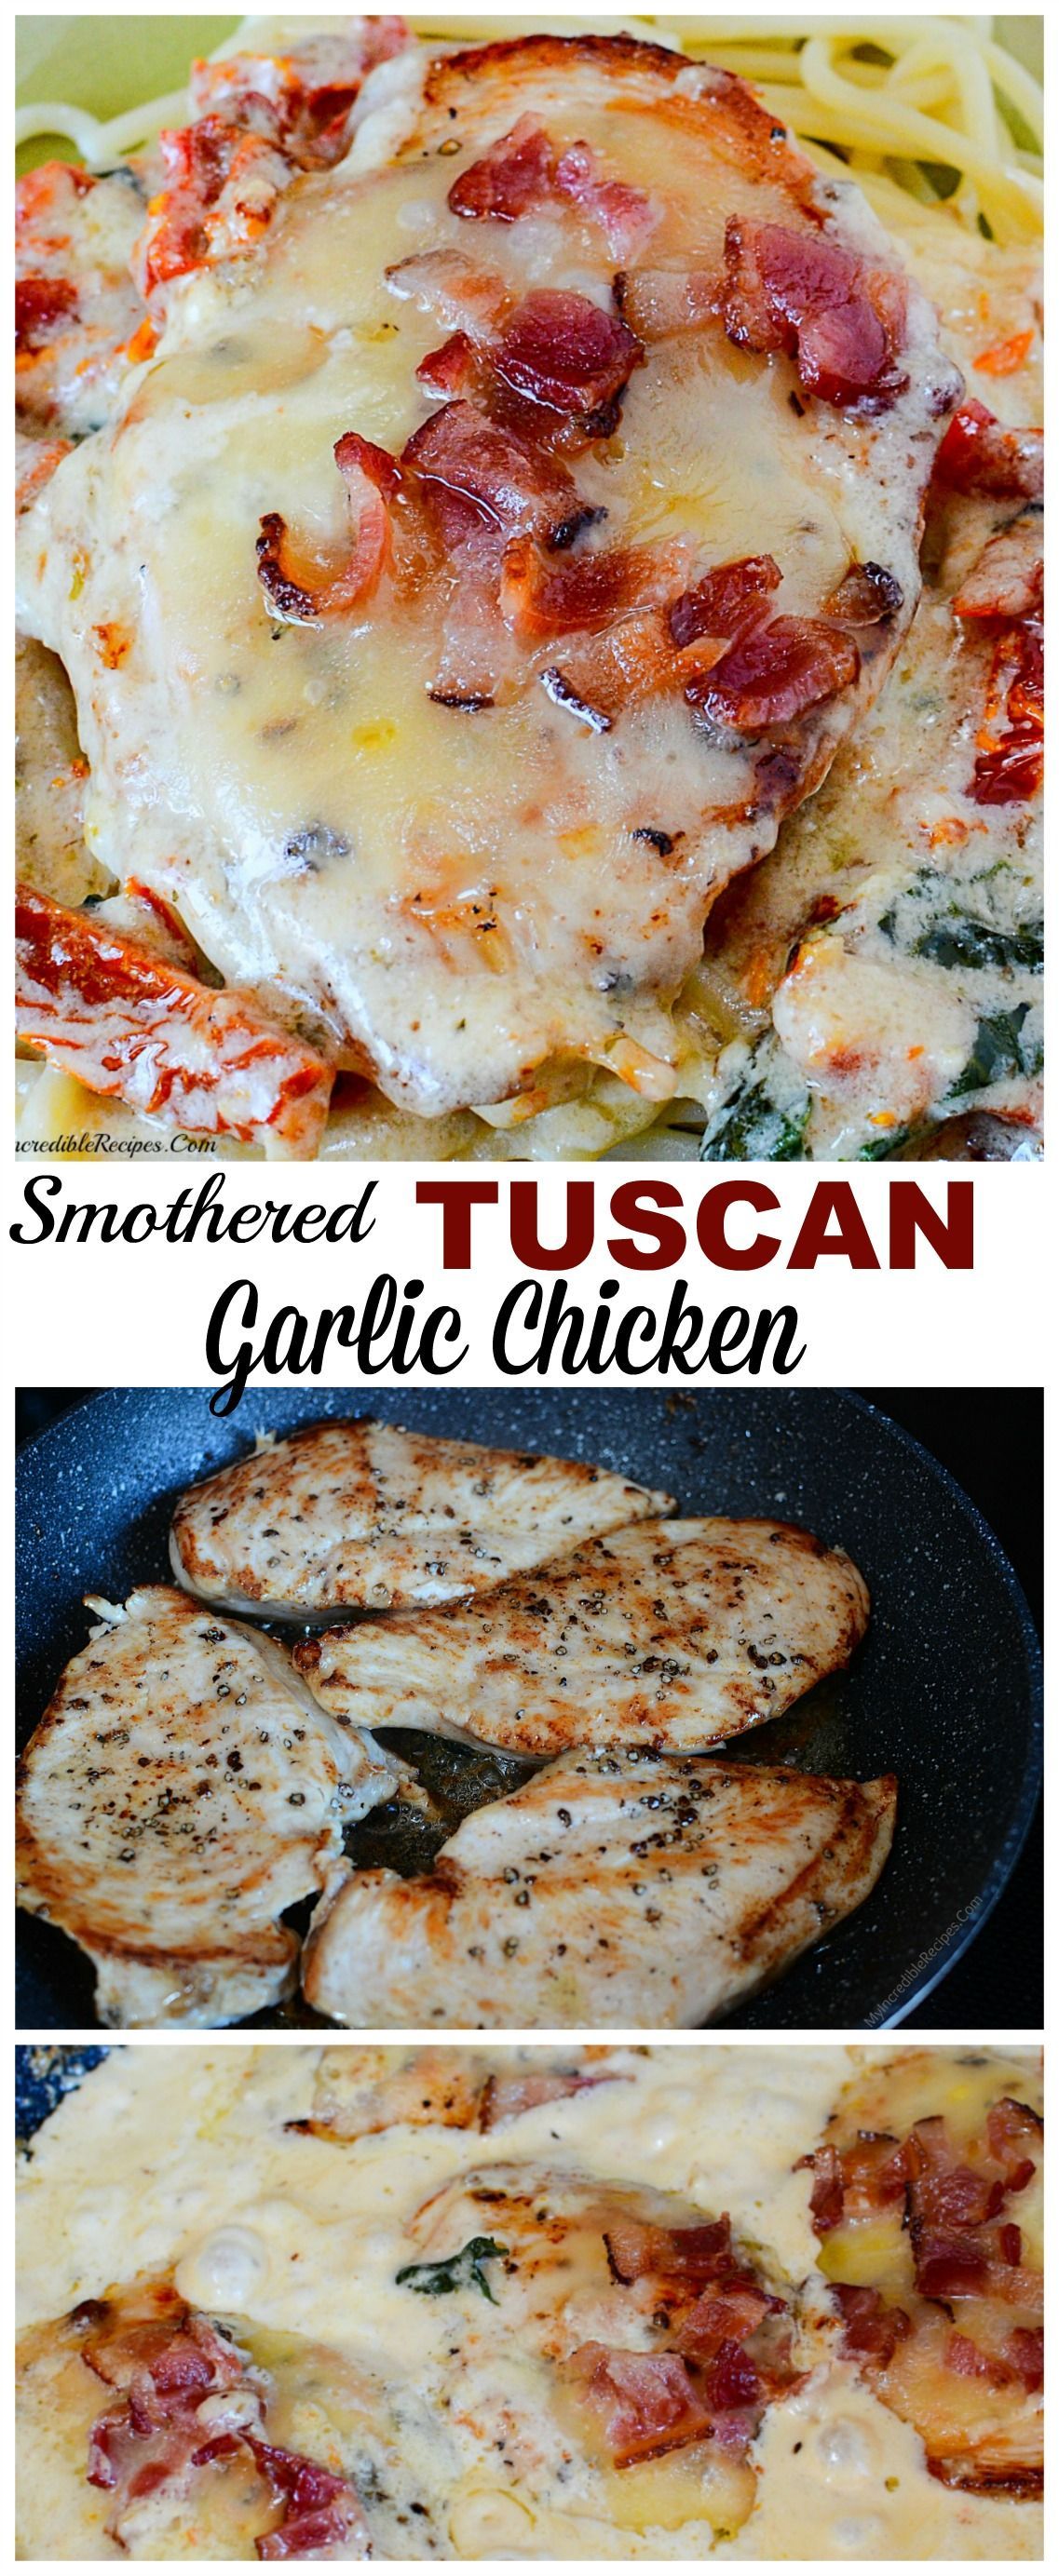 Smothered Tuscan Garlic Chicken!